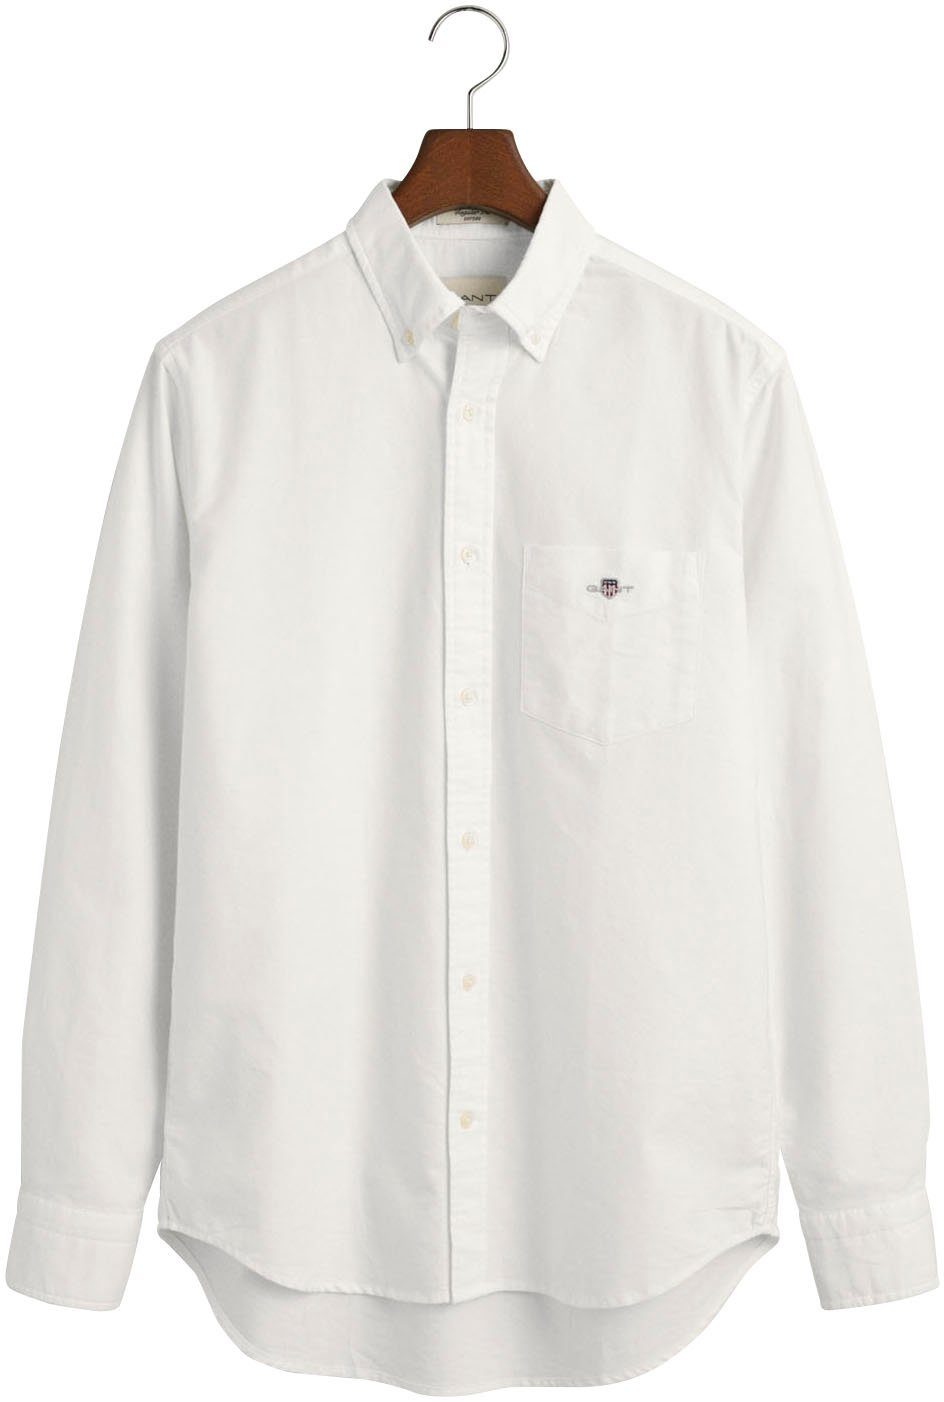 SHIRT den aus Gant inspiriert von dem white Businesshemd Archiv OXFORD 1980er-Jahren REG